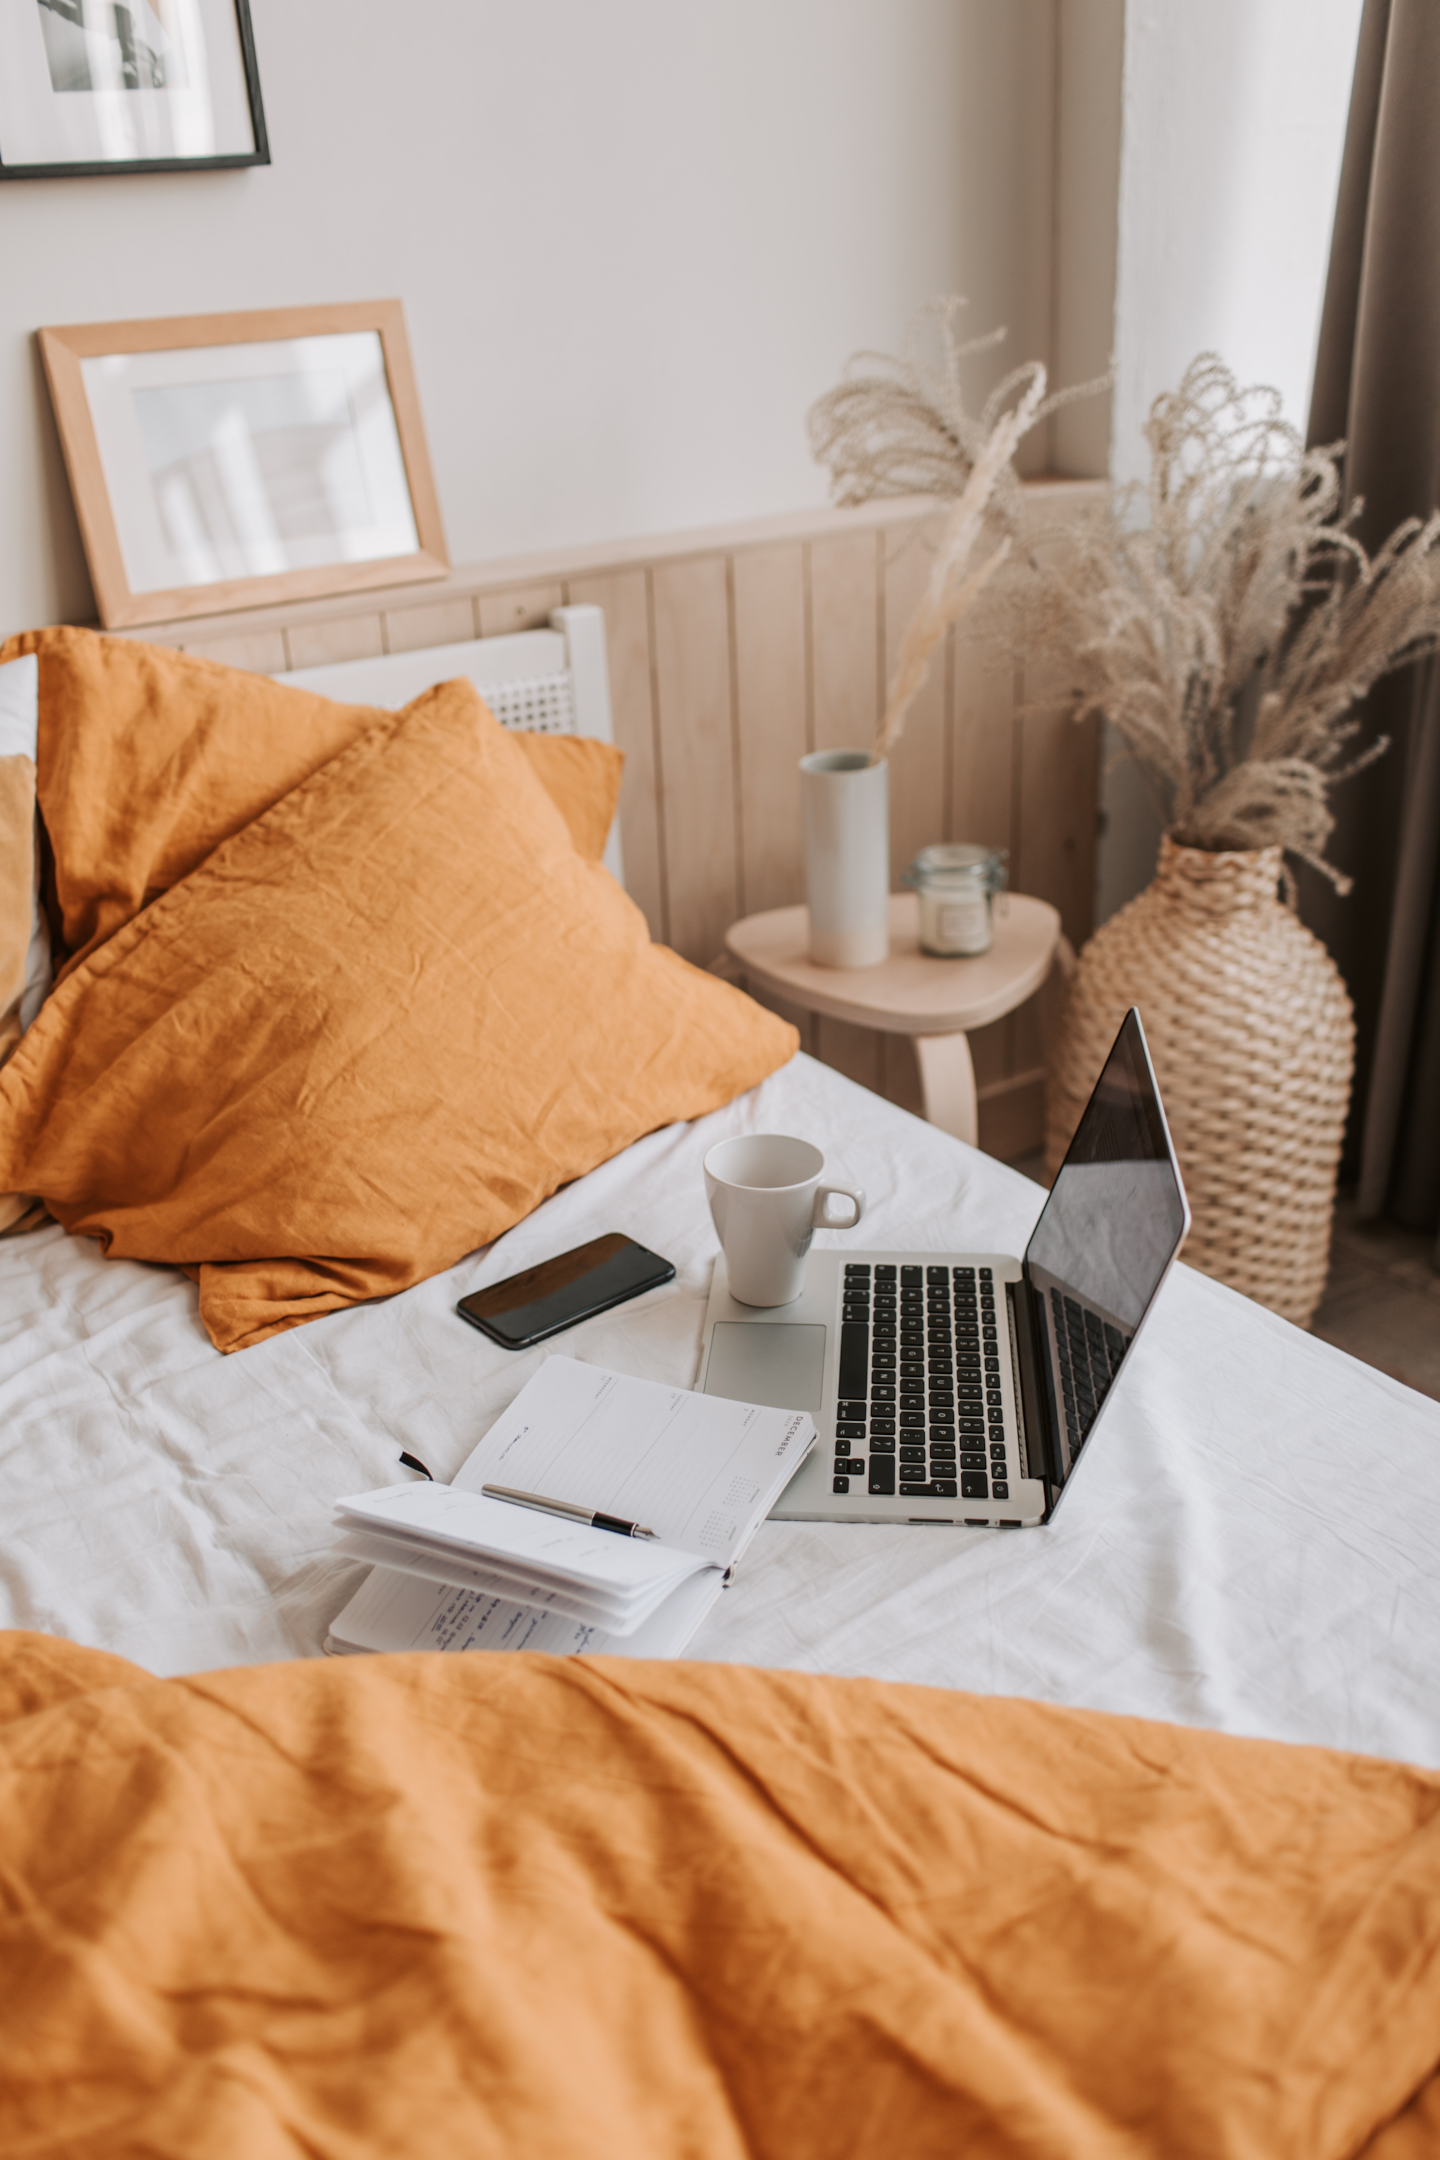 Ein Laptop, ein Handy, eine Tasse sowie ein Notizbuch liegen auf einem Bett mit orangenen Kissen daneben.